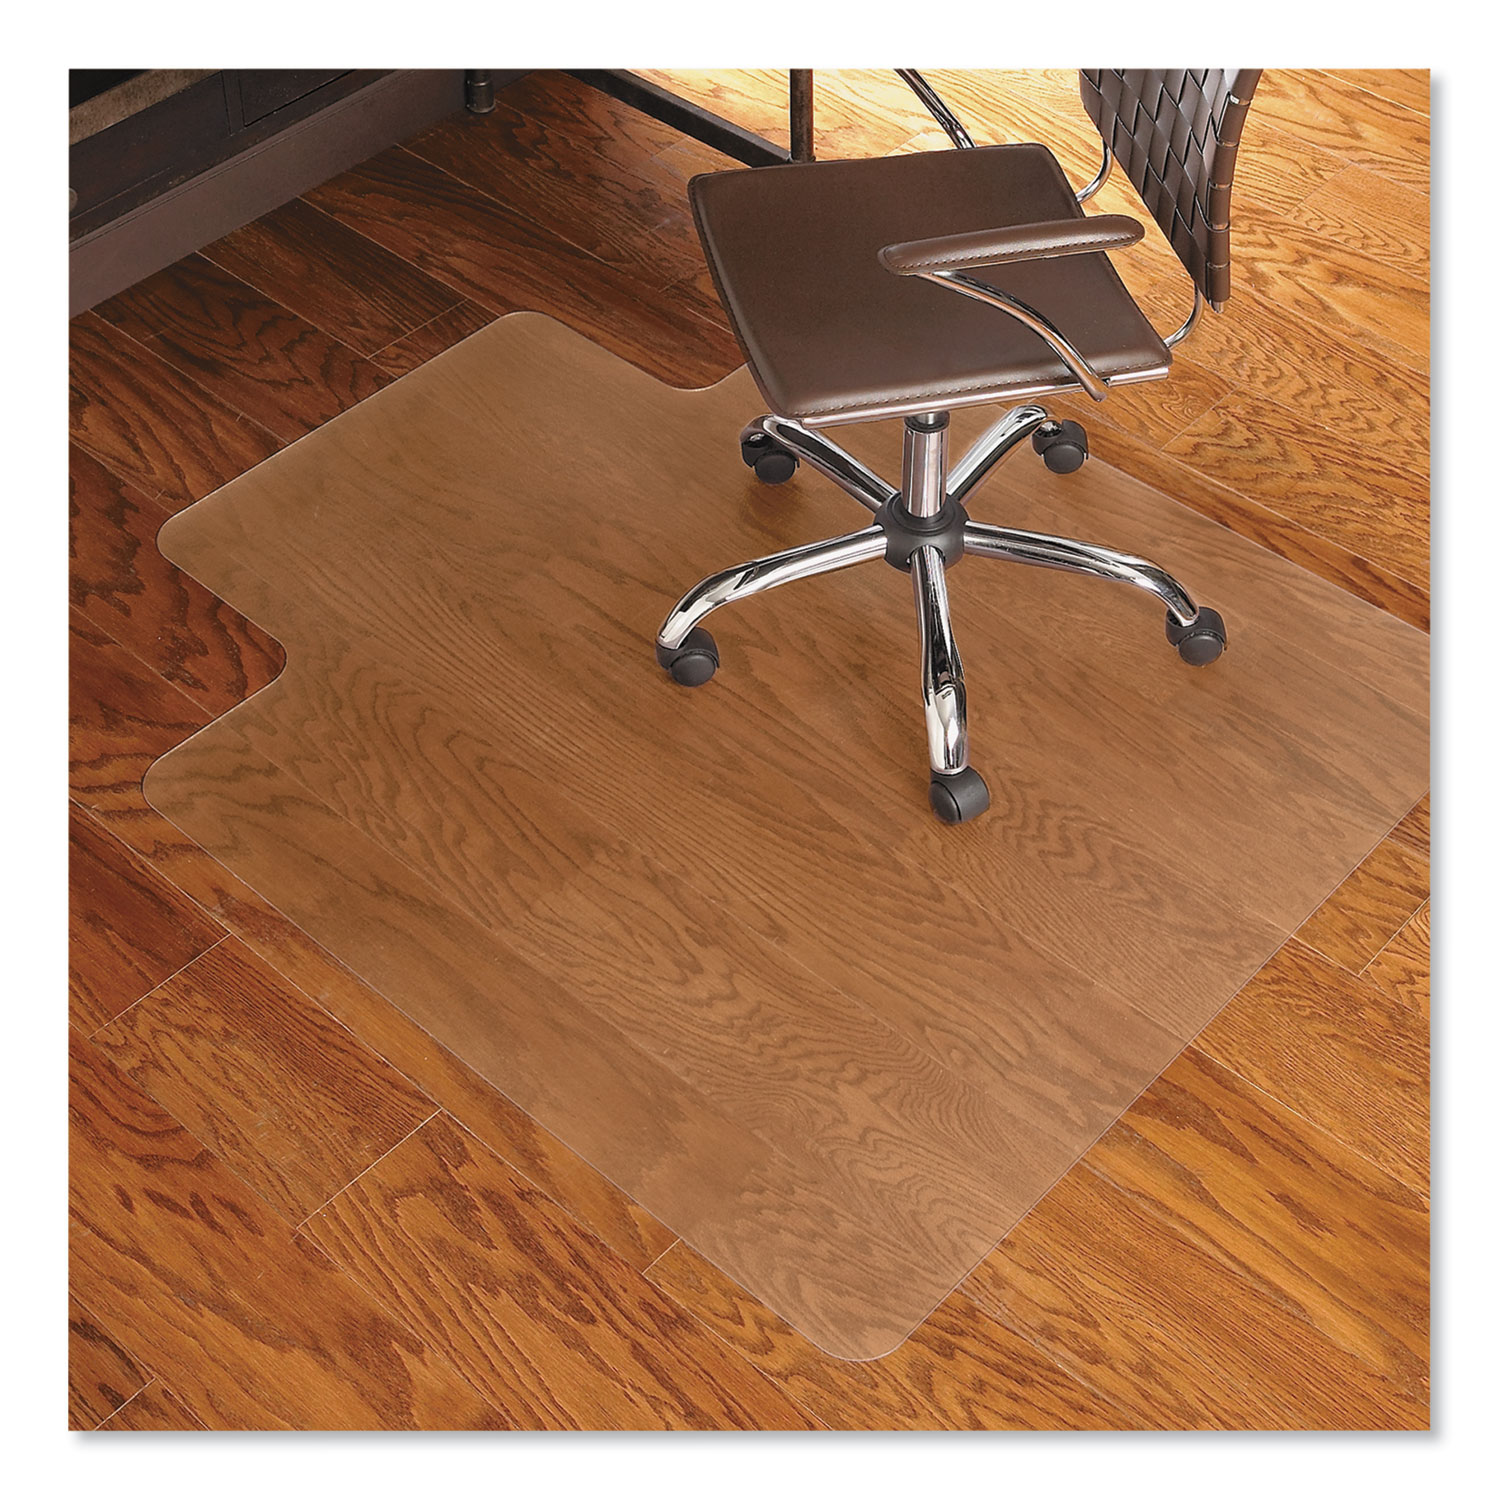  ES Robbins 131823 Economy Series Chair Mat for Hard Floors, 45 x 53, Clear (ESR131823) 